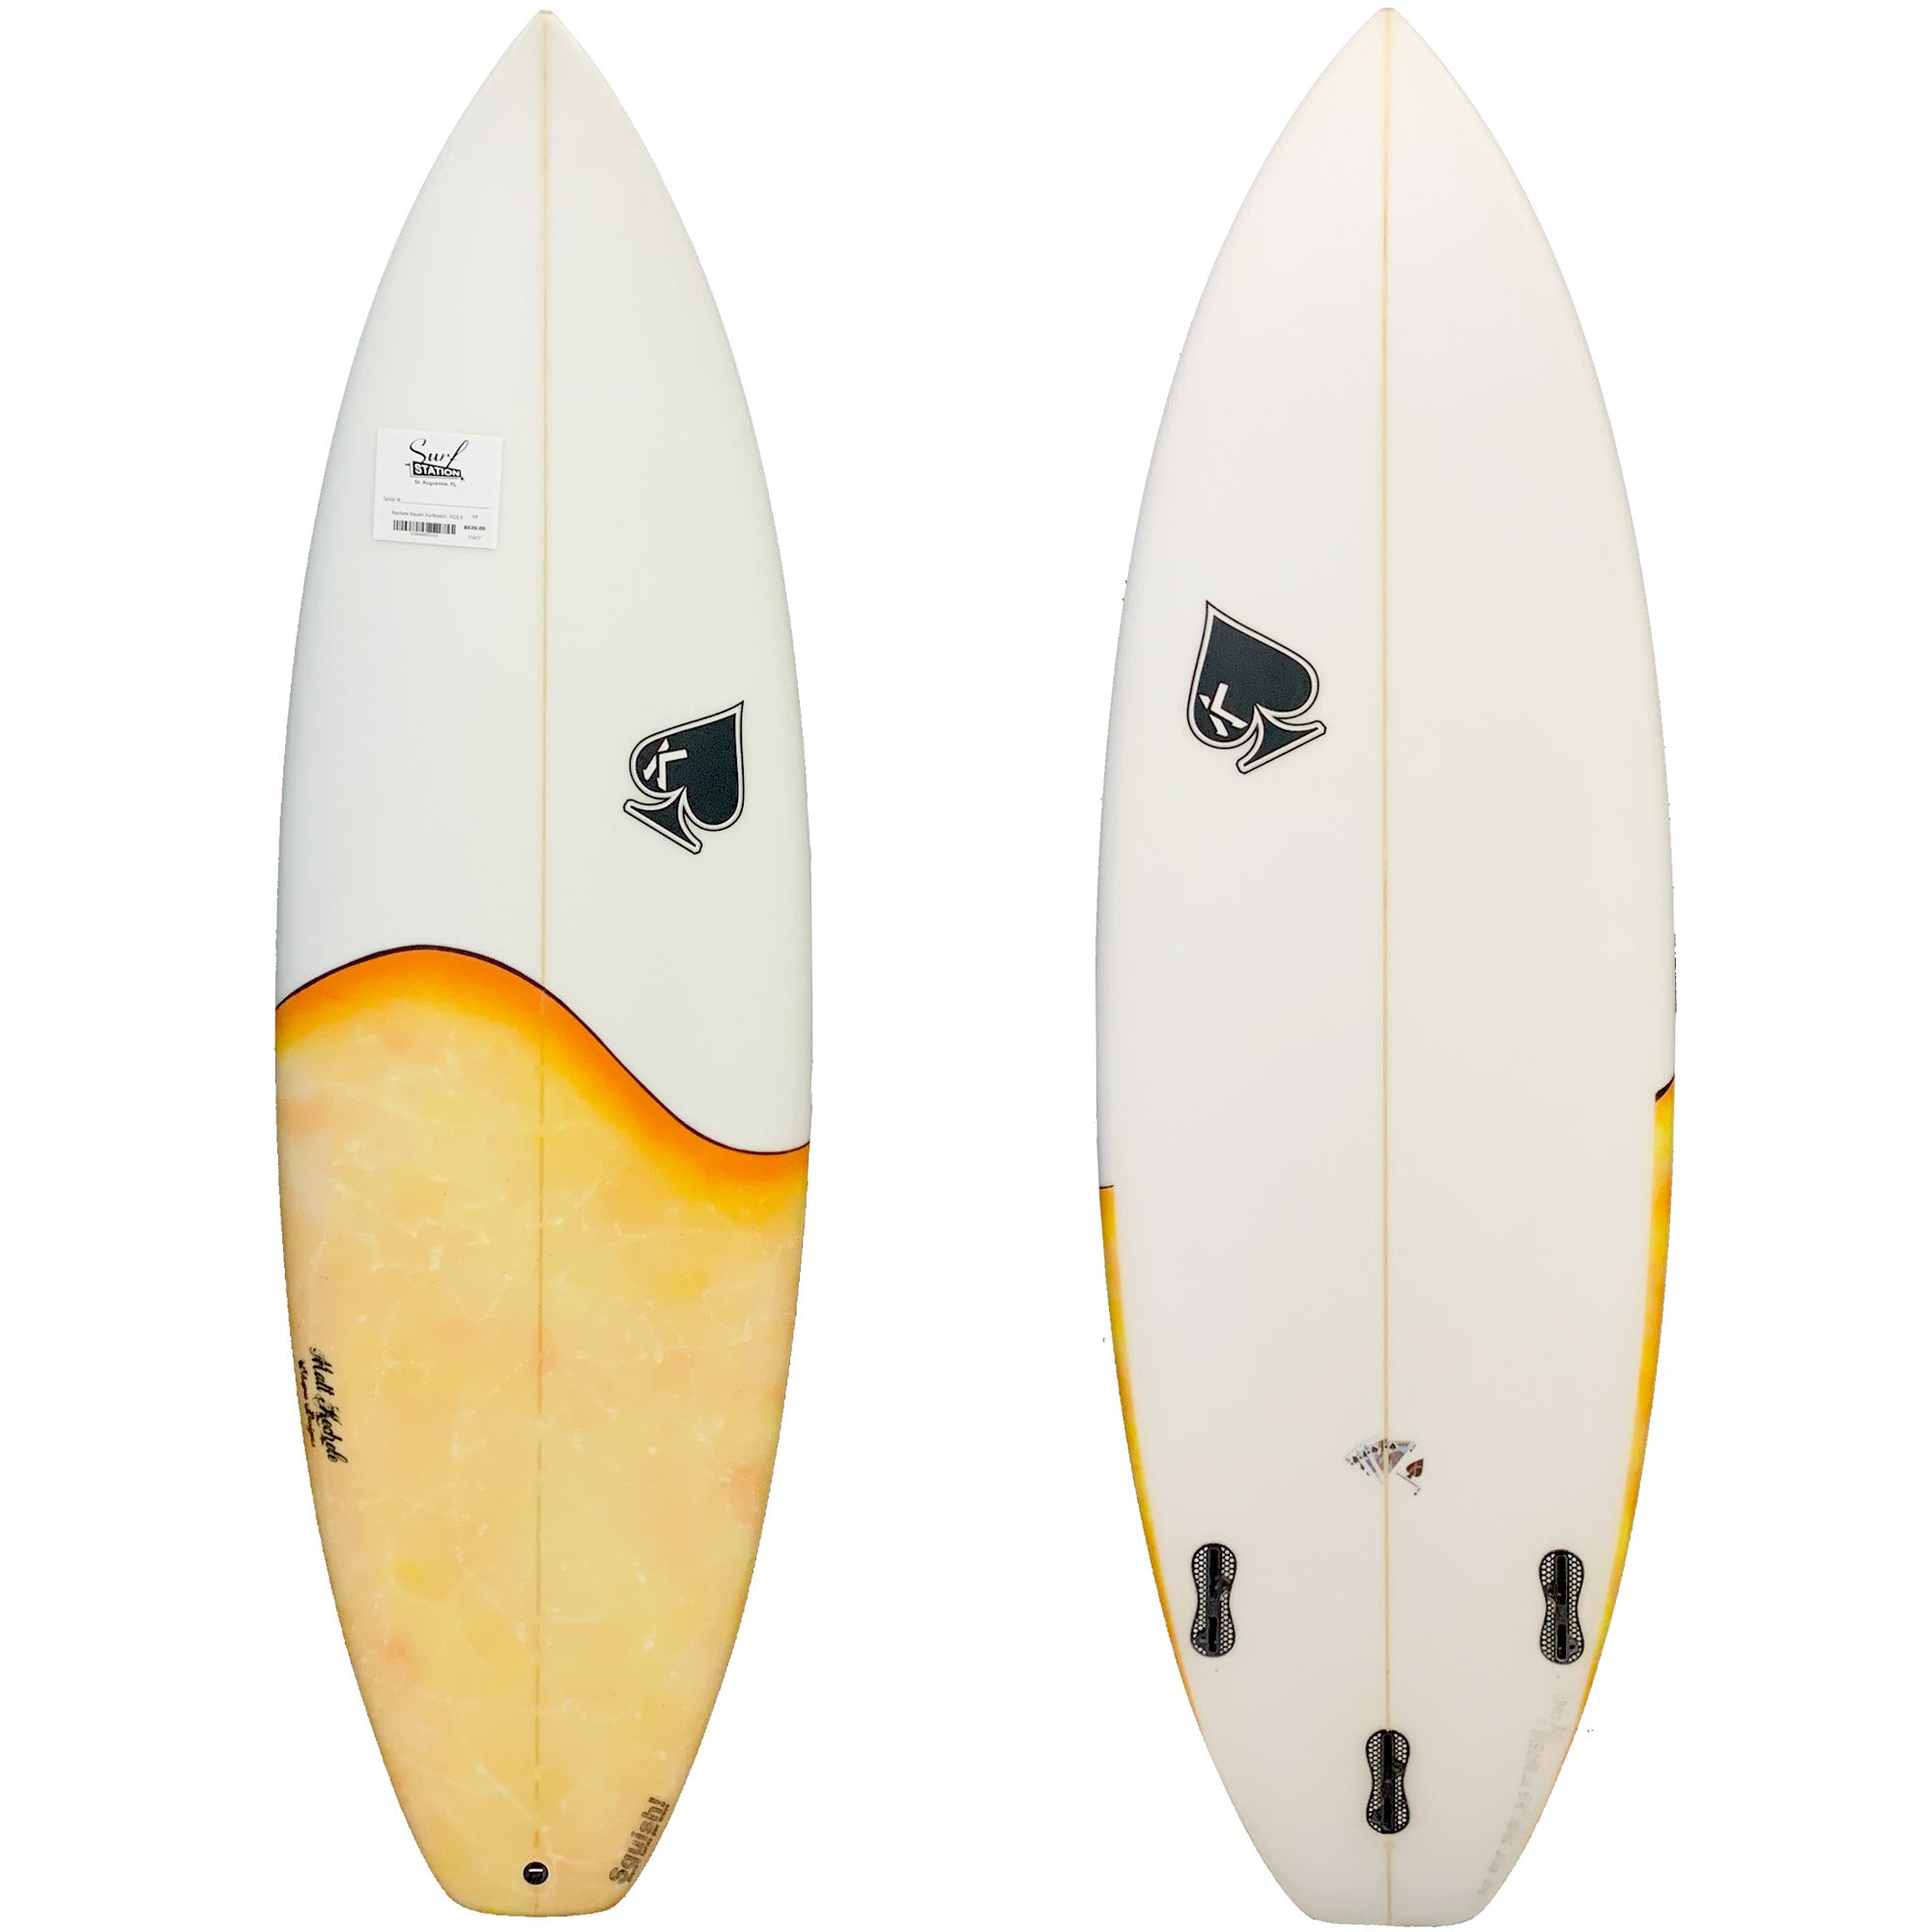 Kechele Squish Surfboard - FCS II